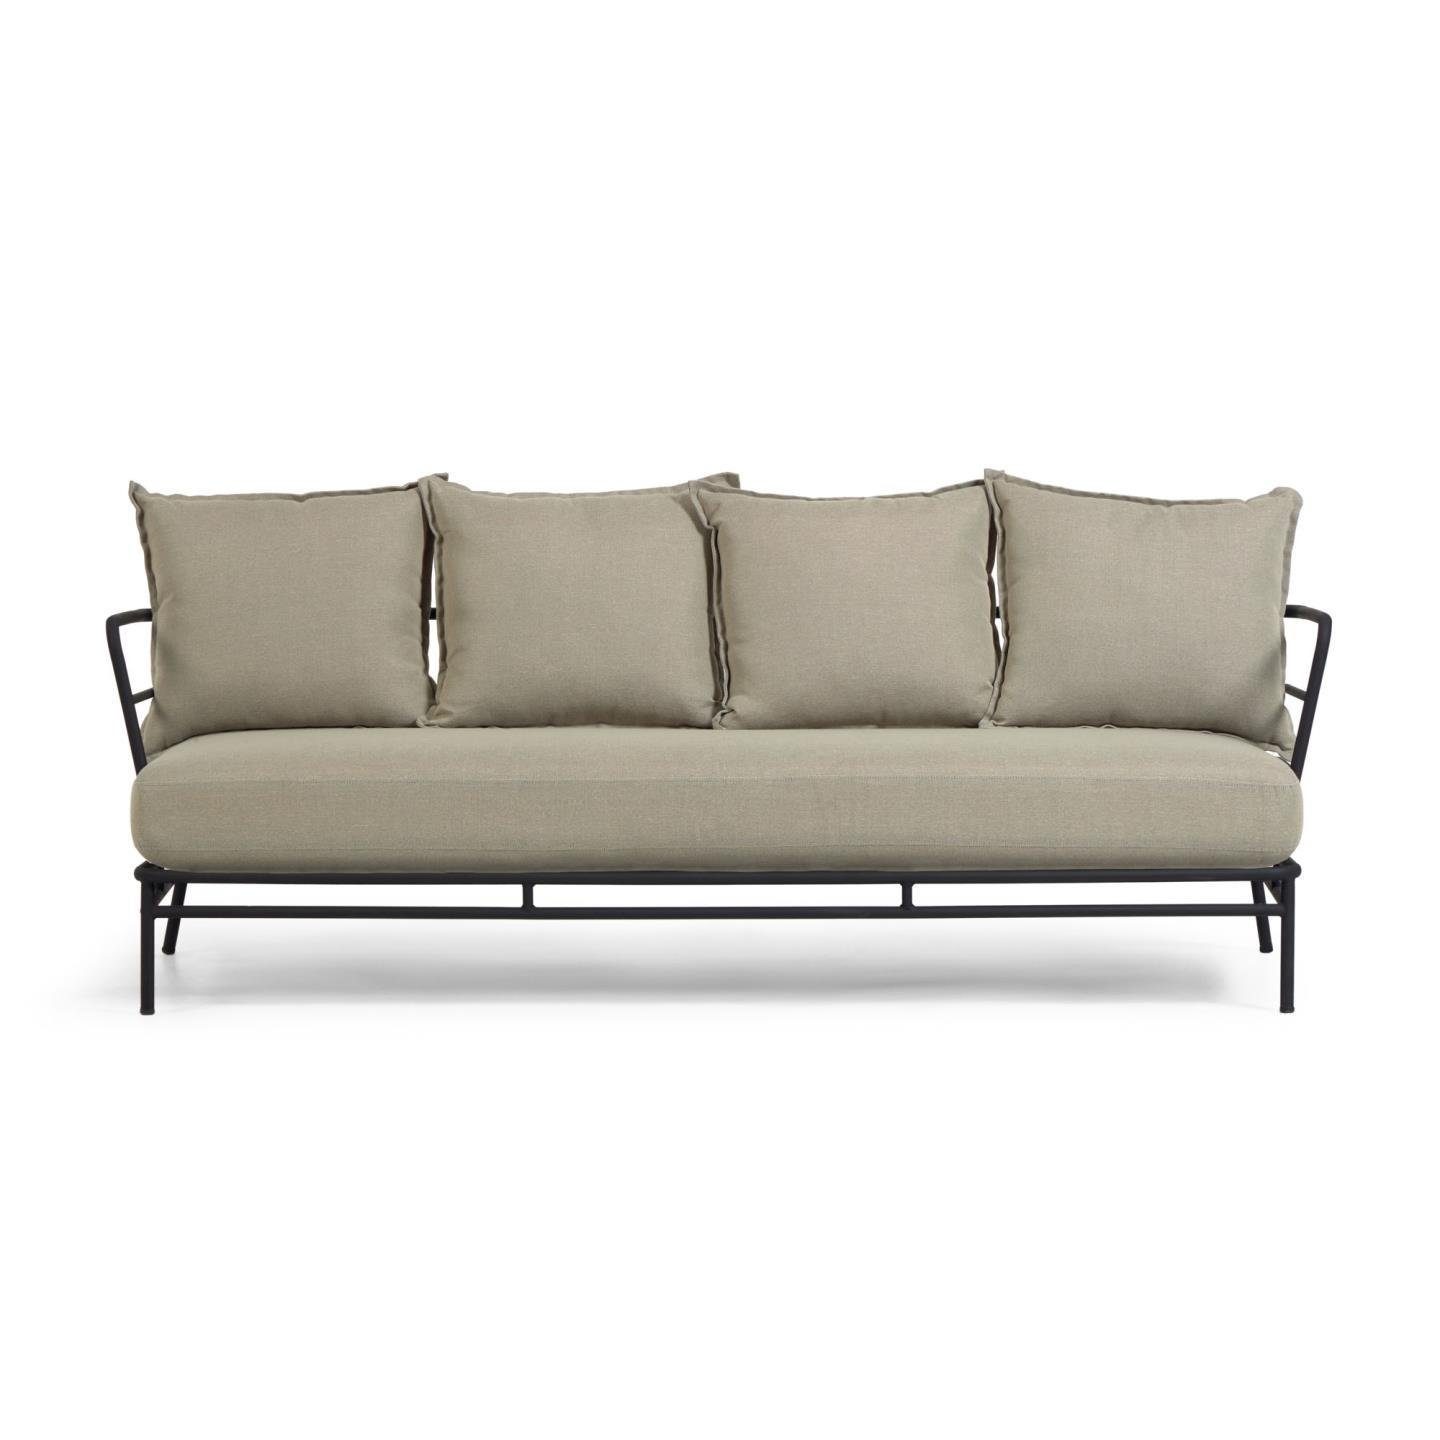 Gartenmöbel schwarzer Mareluz Sofa 3-Sitzer 197cm Sofa Couch Natur24 Stahl